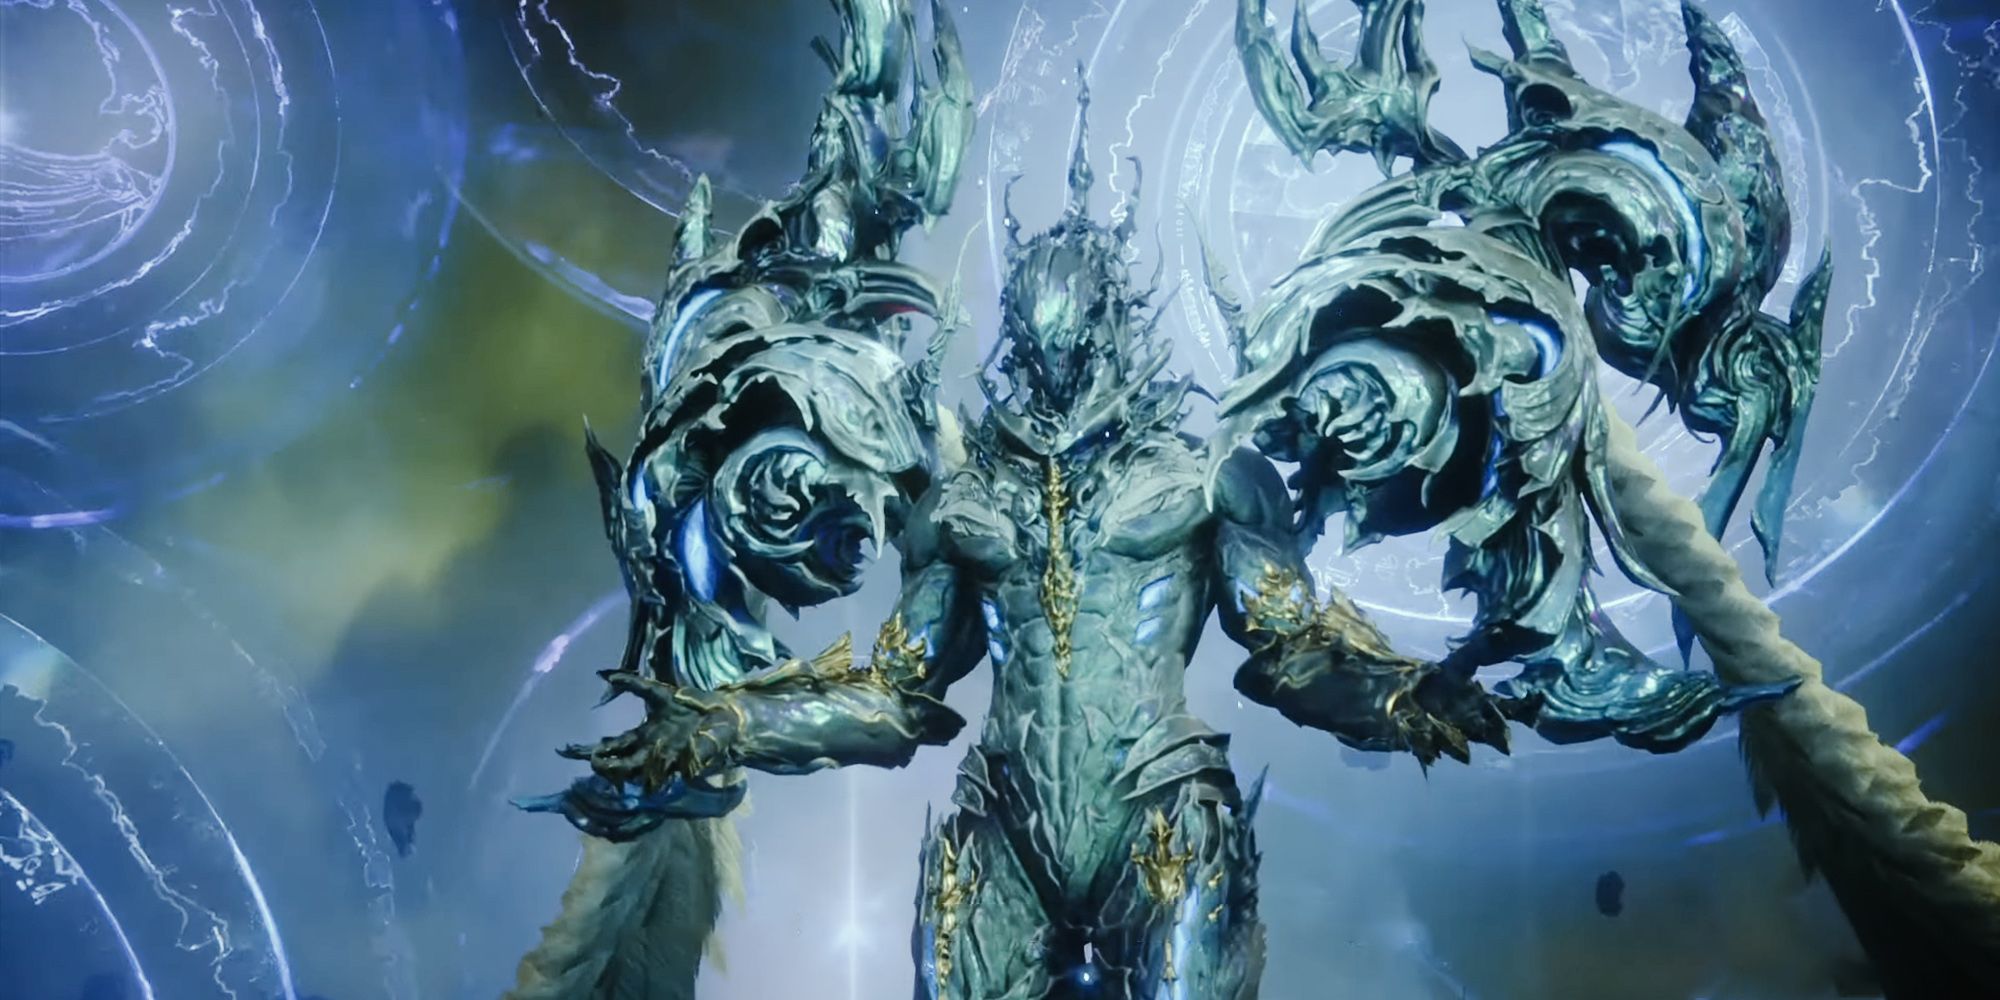 Ultima, makhluk dunia lain yang mengenakan armor kristal, berdiri dengan tangan terentang.  Eter ajaib berputar di latar belakang.